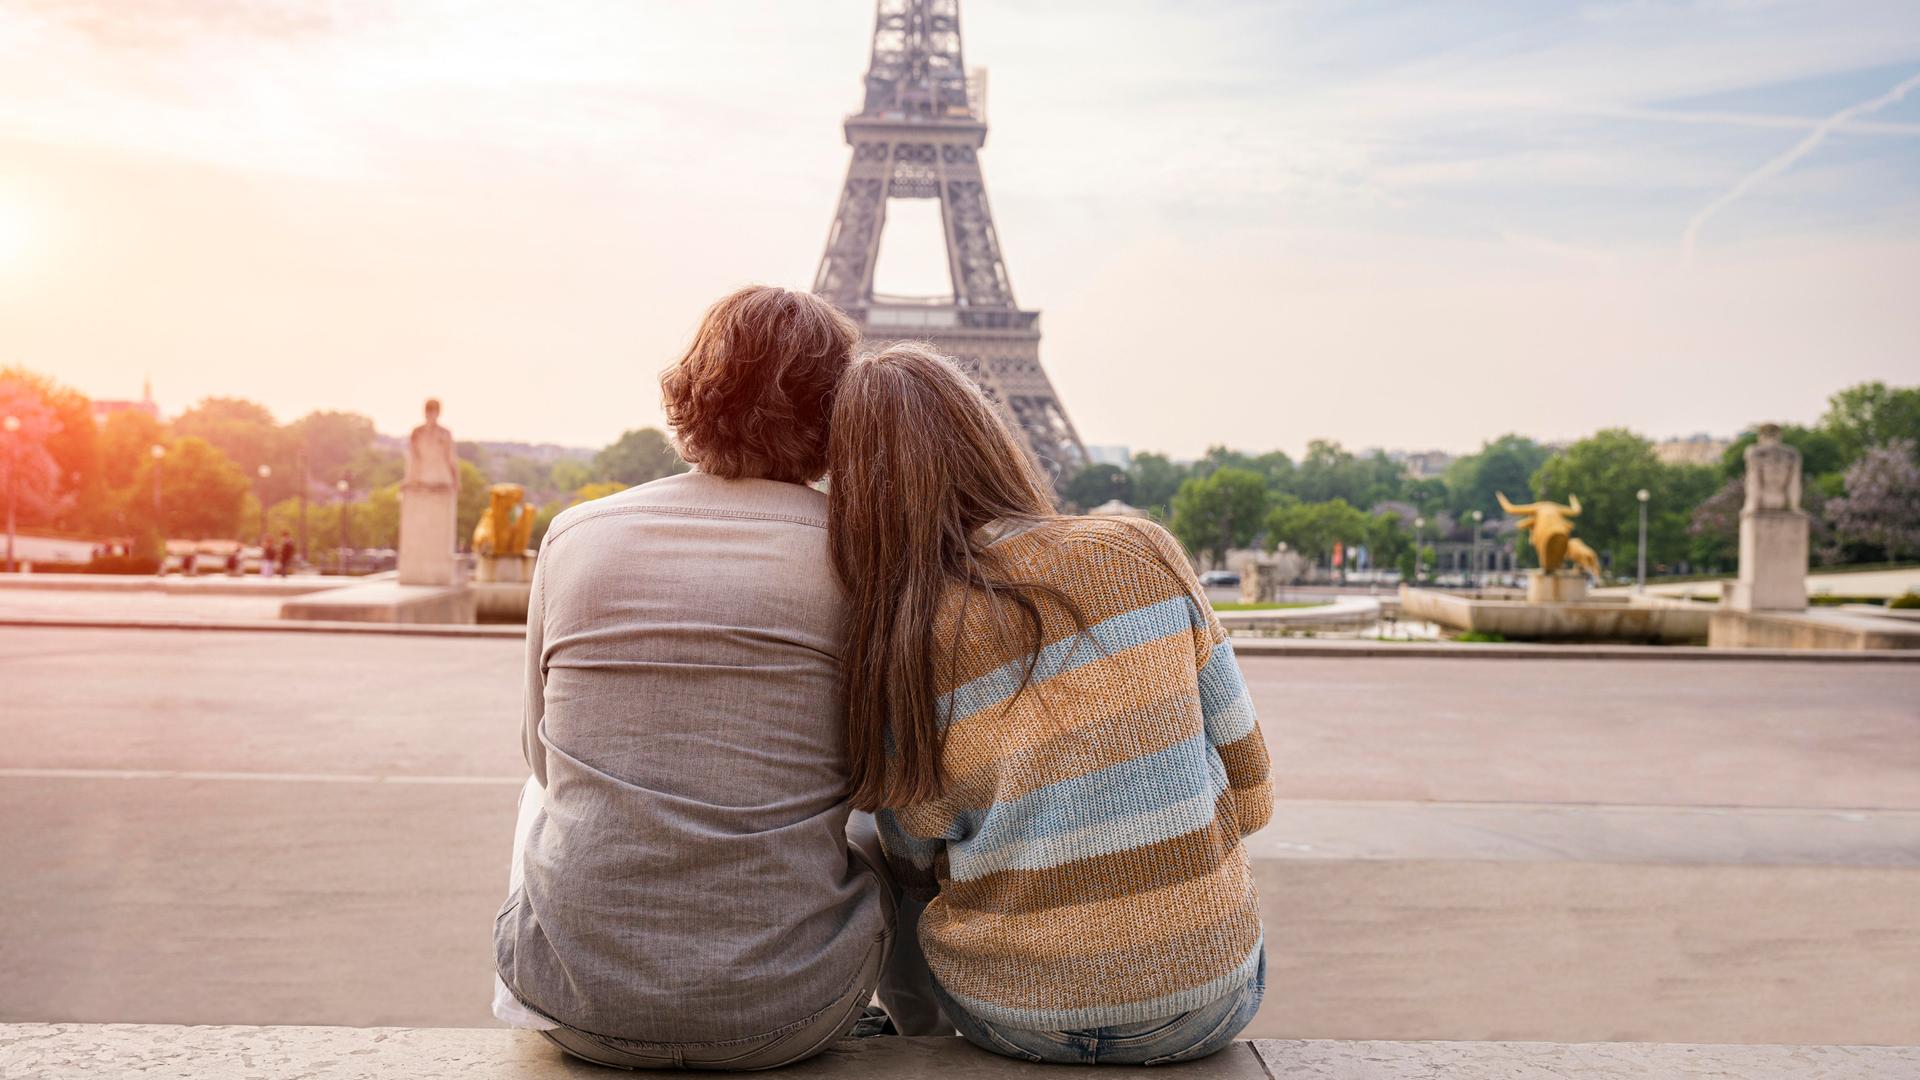 Ein Mann und eine Frau reiferen Alters sitzen eng aneinandergeschmiegt und betrachten den Eiffelturm in Paris. Sie sind in Rückenansicht zu sehen.